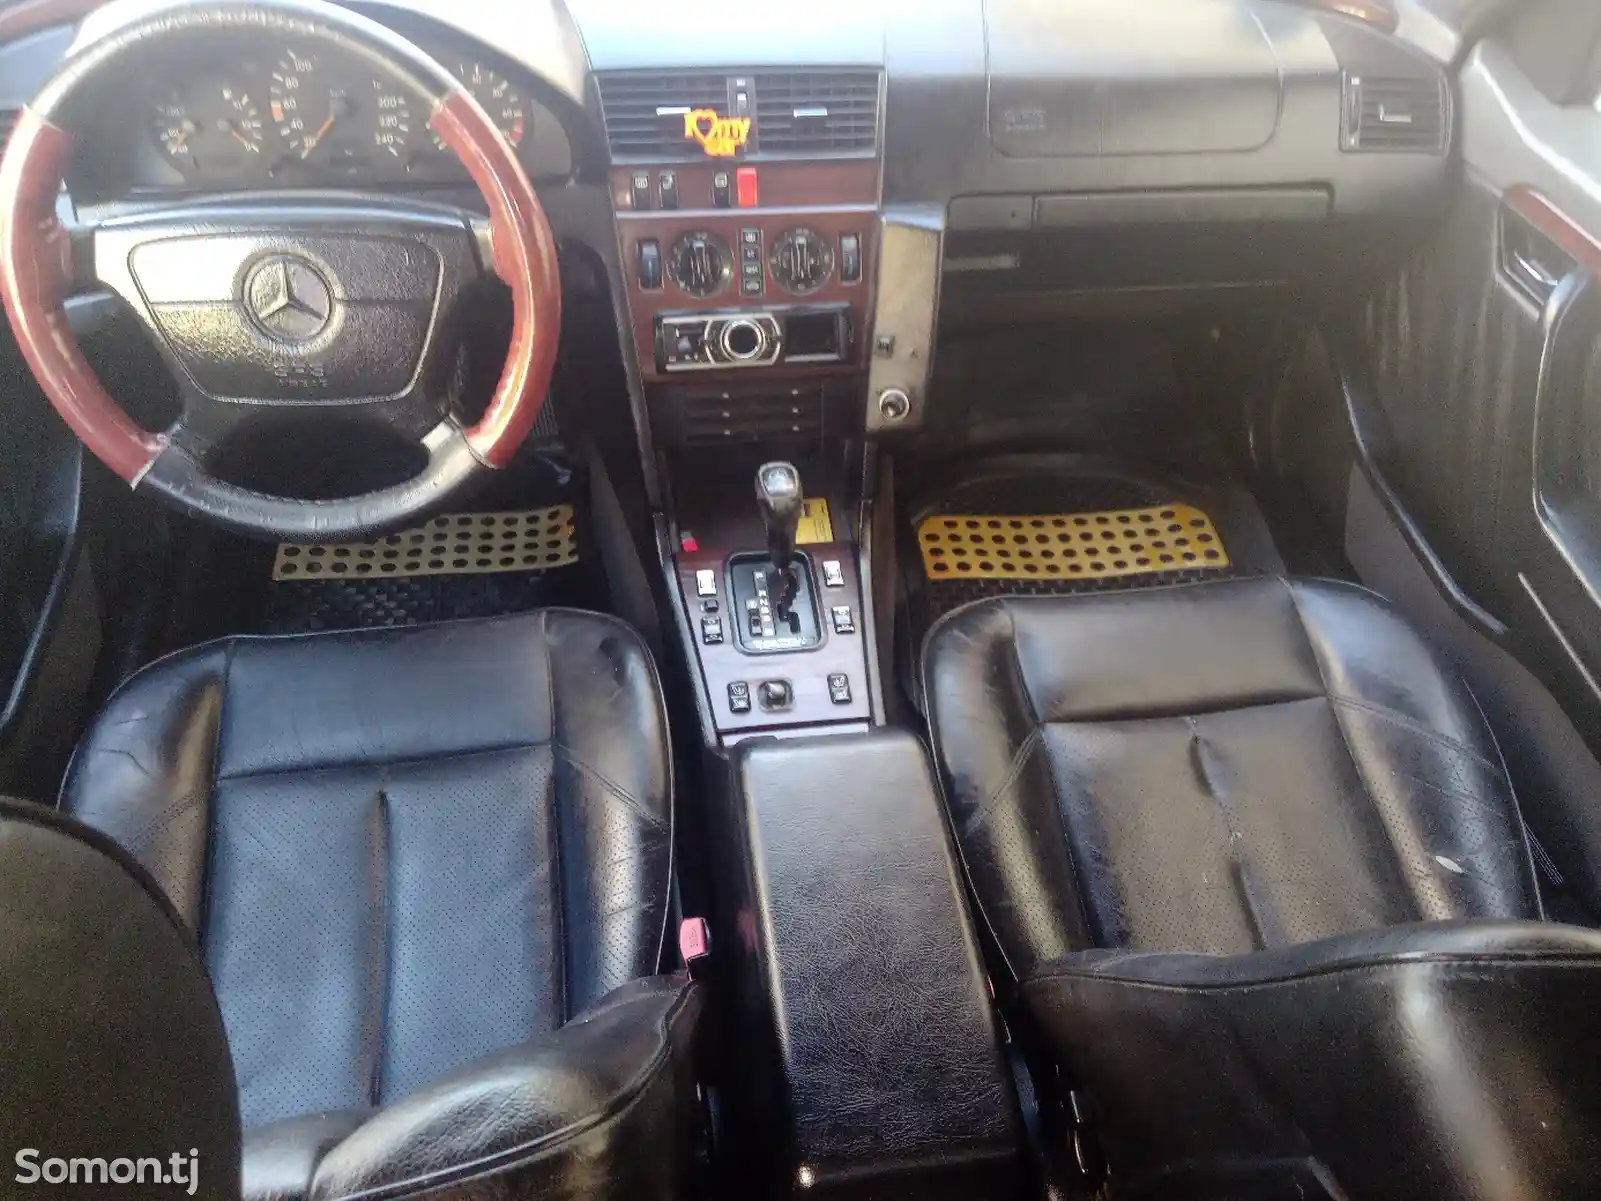 Mercedes-Benz C class, 1995-2